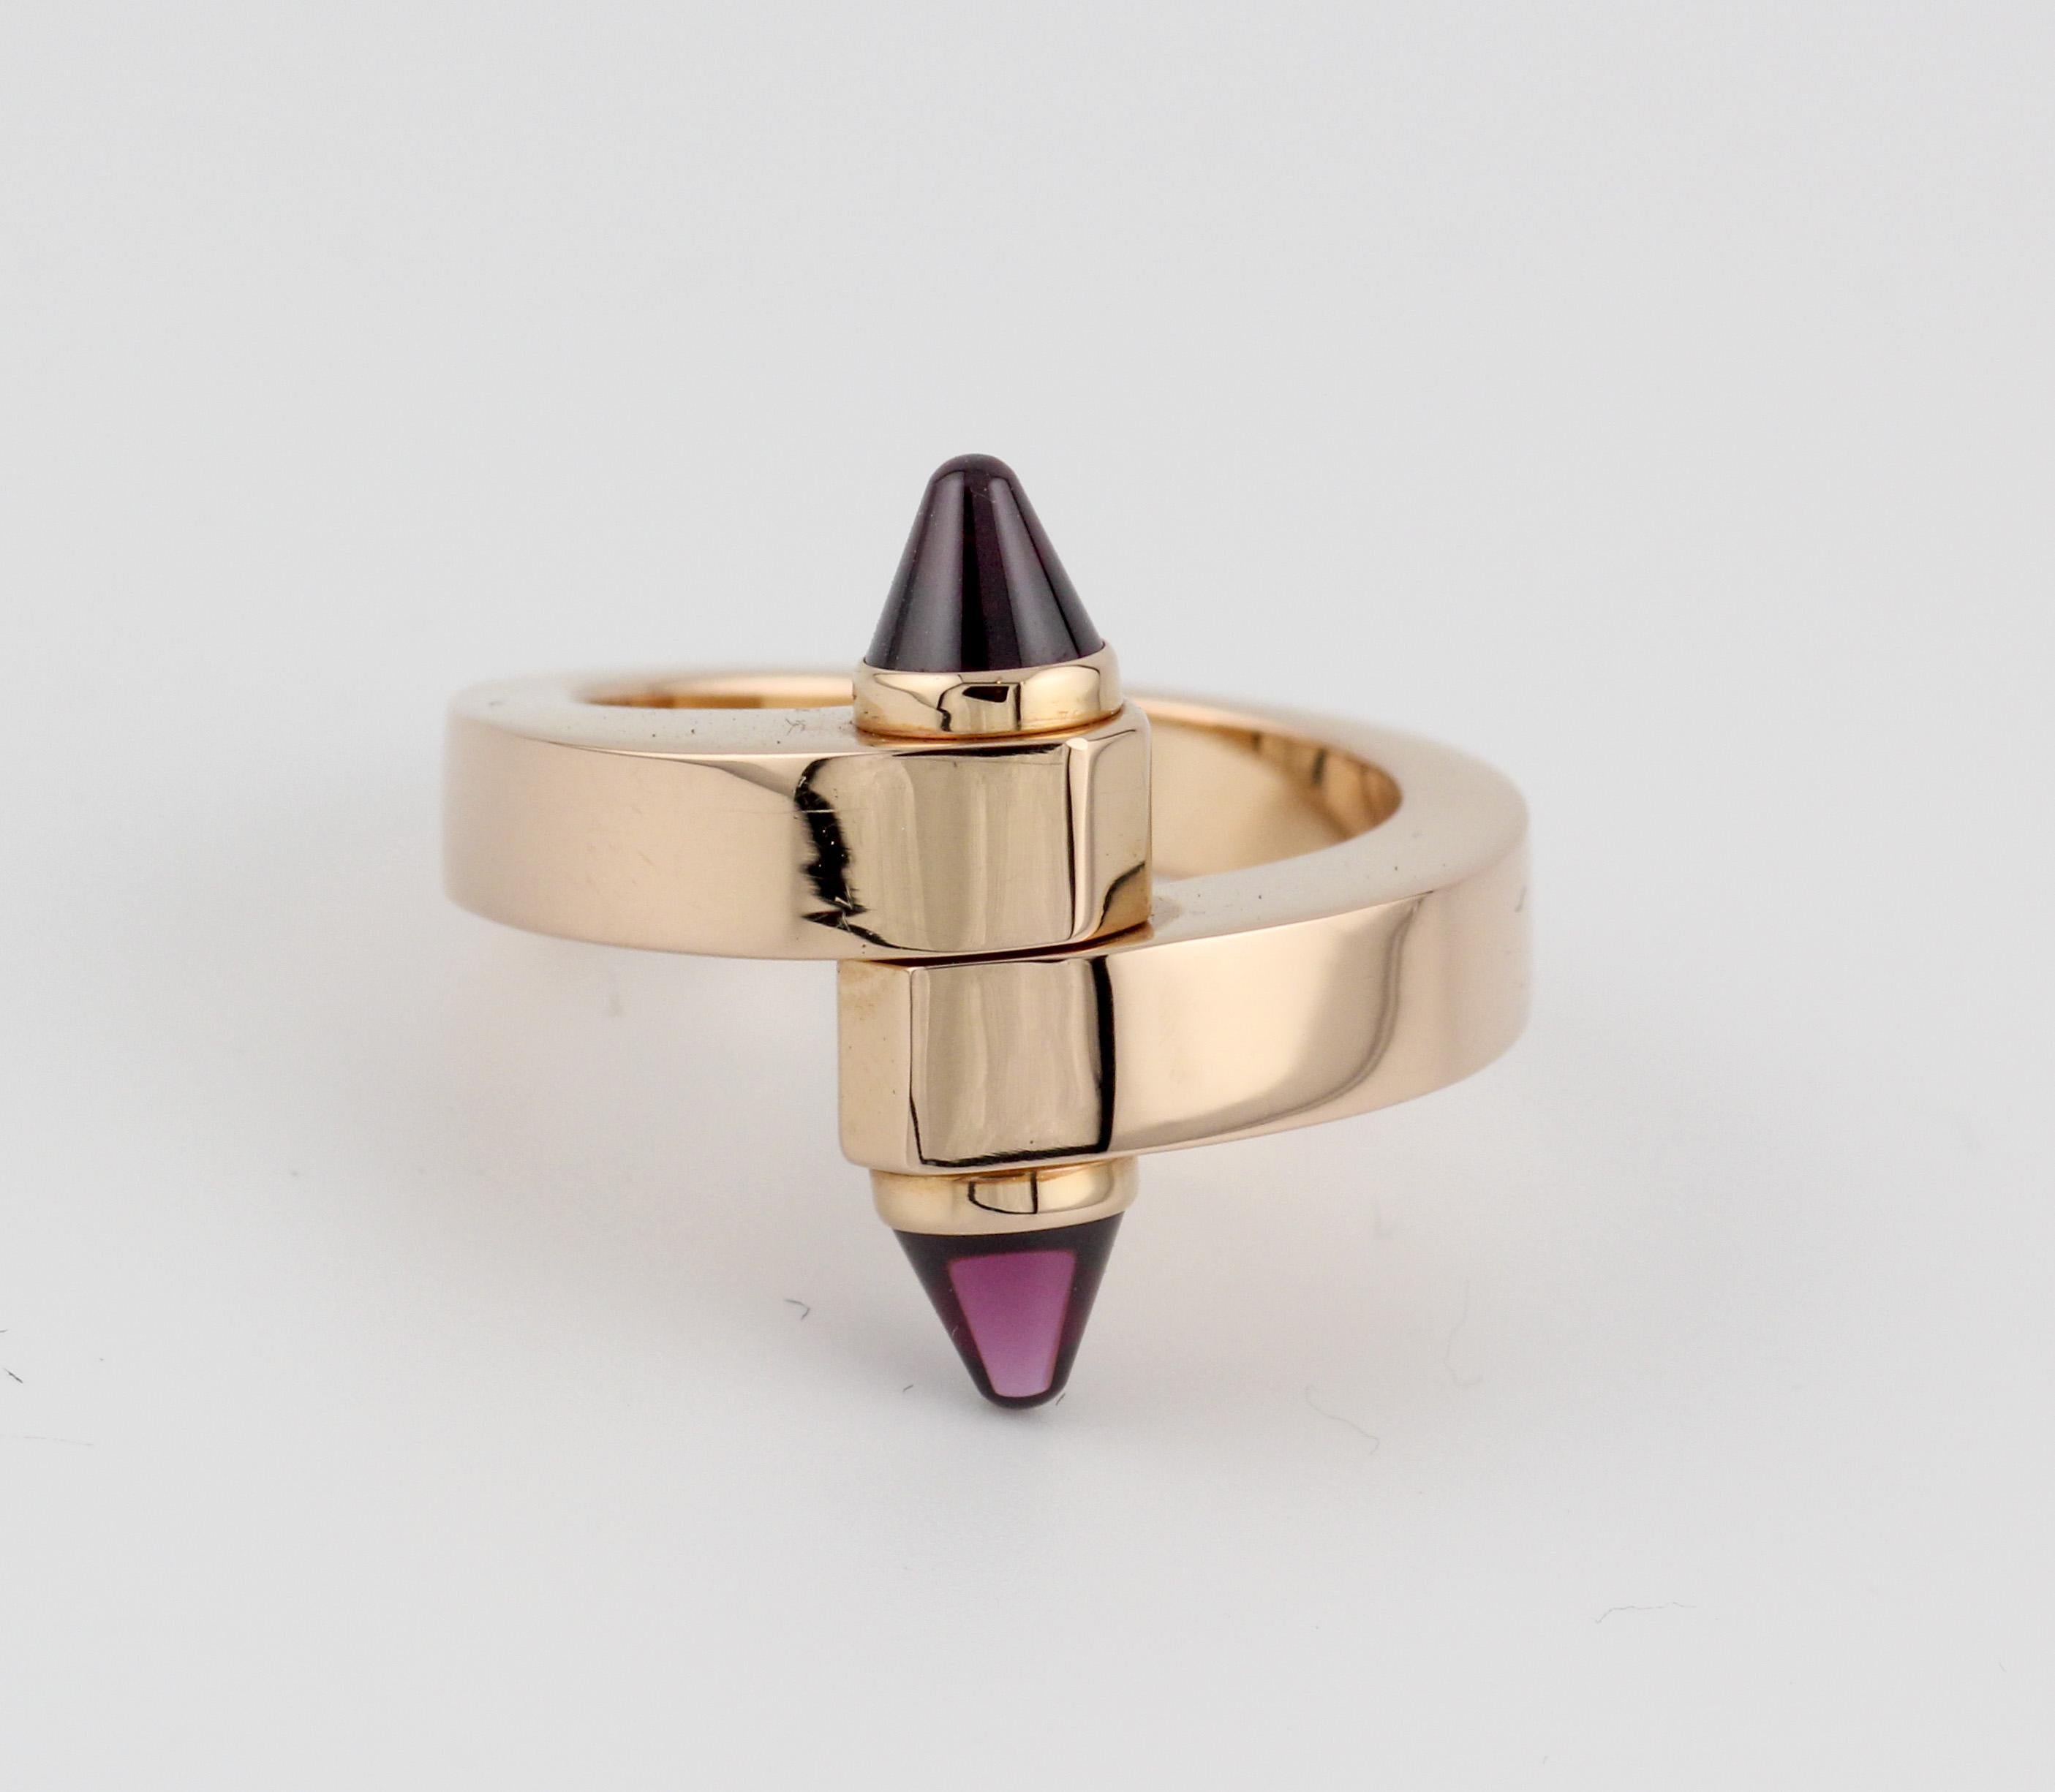 Der Cartier Menotte 18k Rose Gold Turmalin Bypass Ring ist ein Meisterwerk der Juwelierkunst, das Eleganz, Innovation und außergewöhnliche Handwerkskunst nahtlos miteinander verbindet. Dieser Ring ist ein Beweis für den Ruf von Cartier, ikonische